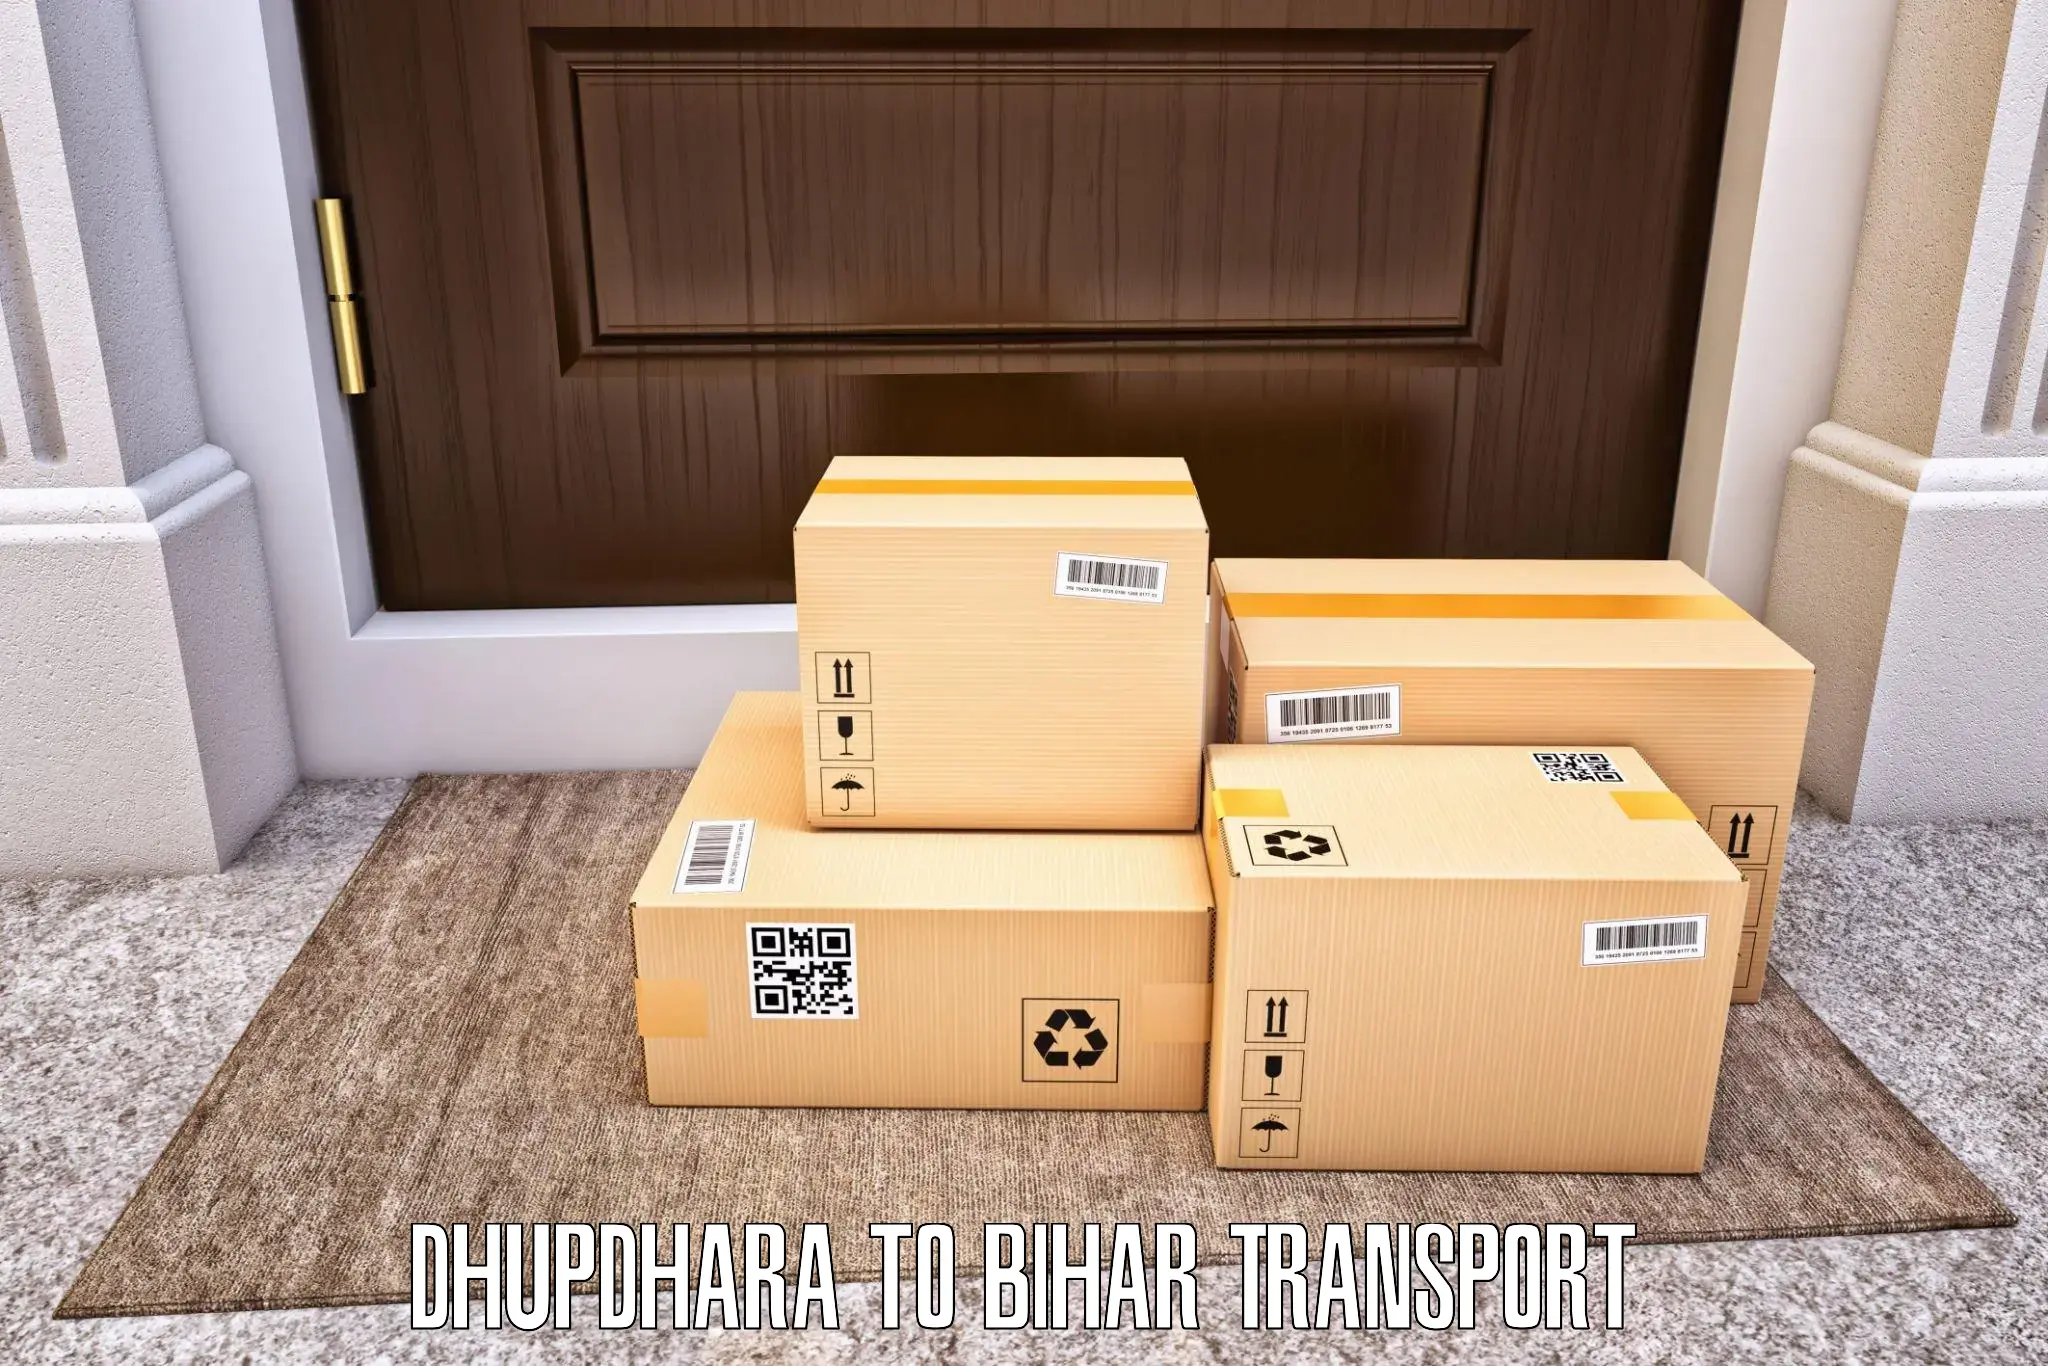 Daily transport service Dhupdhara to Saraiya